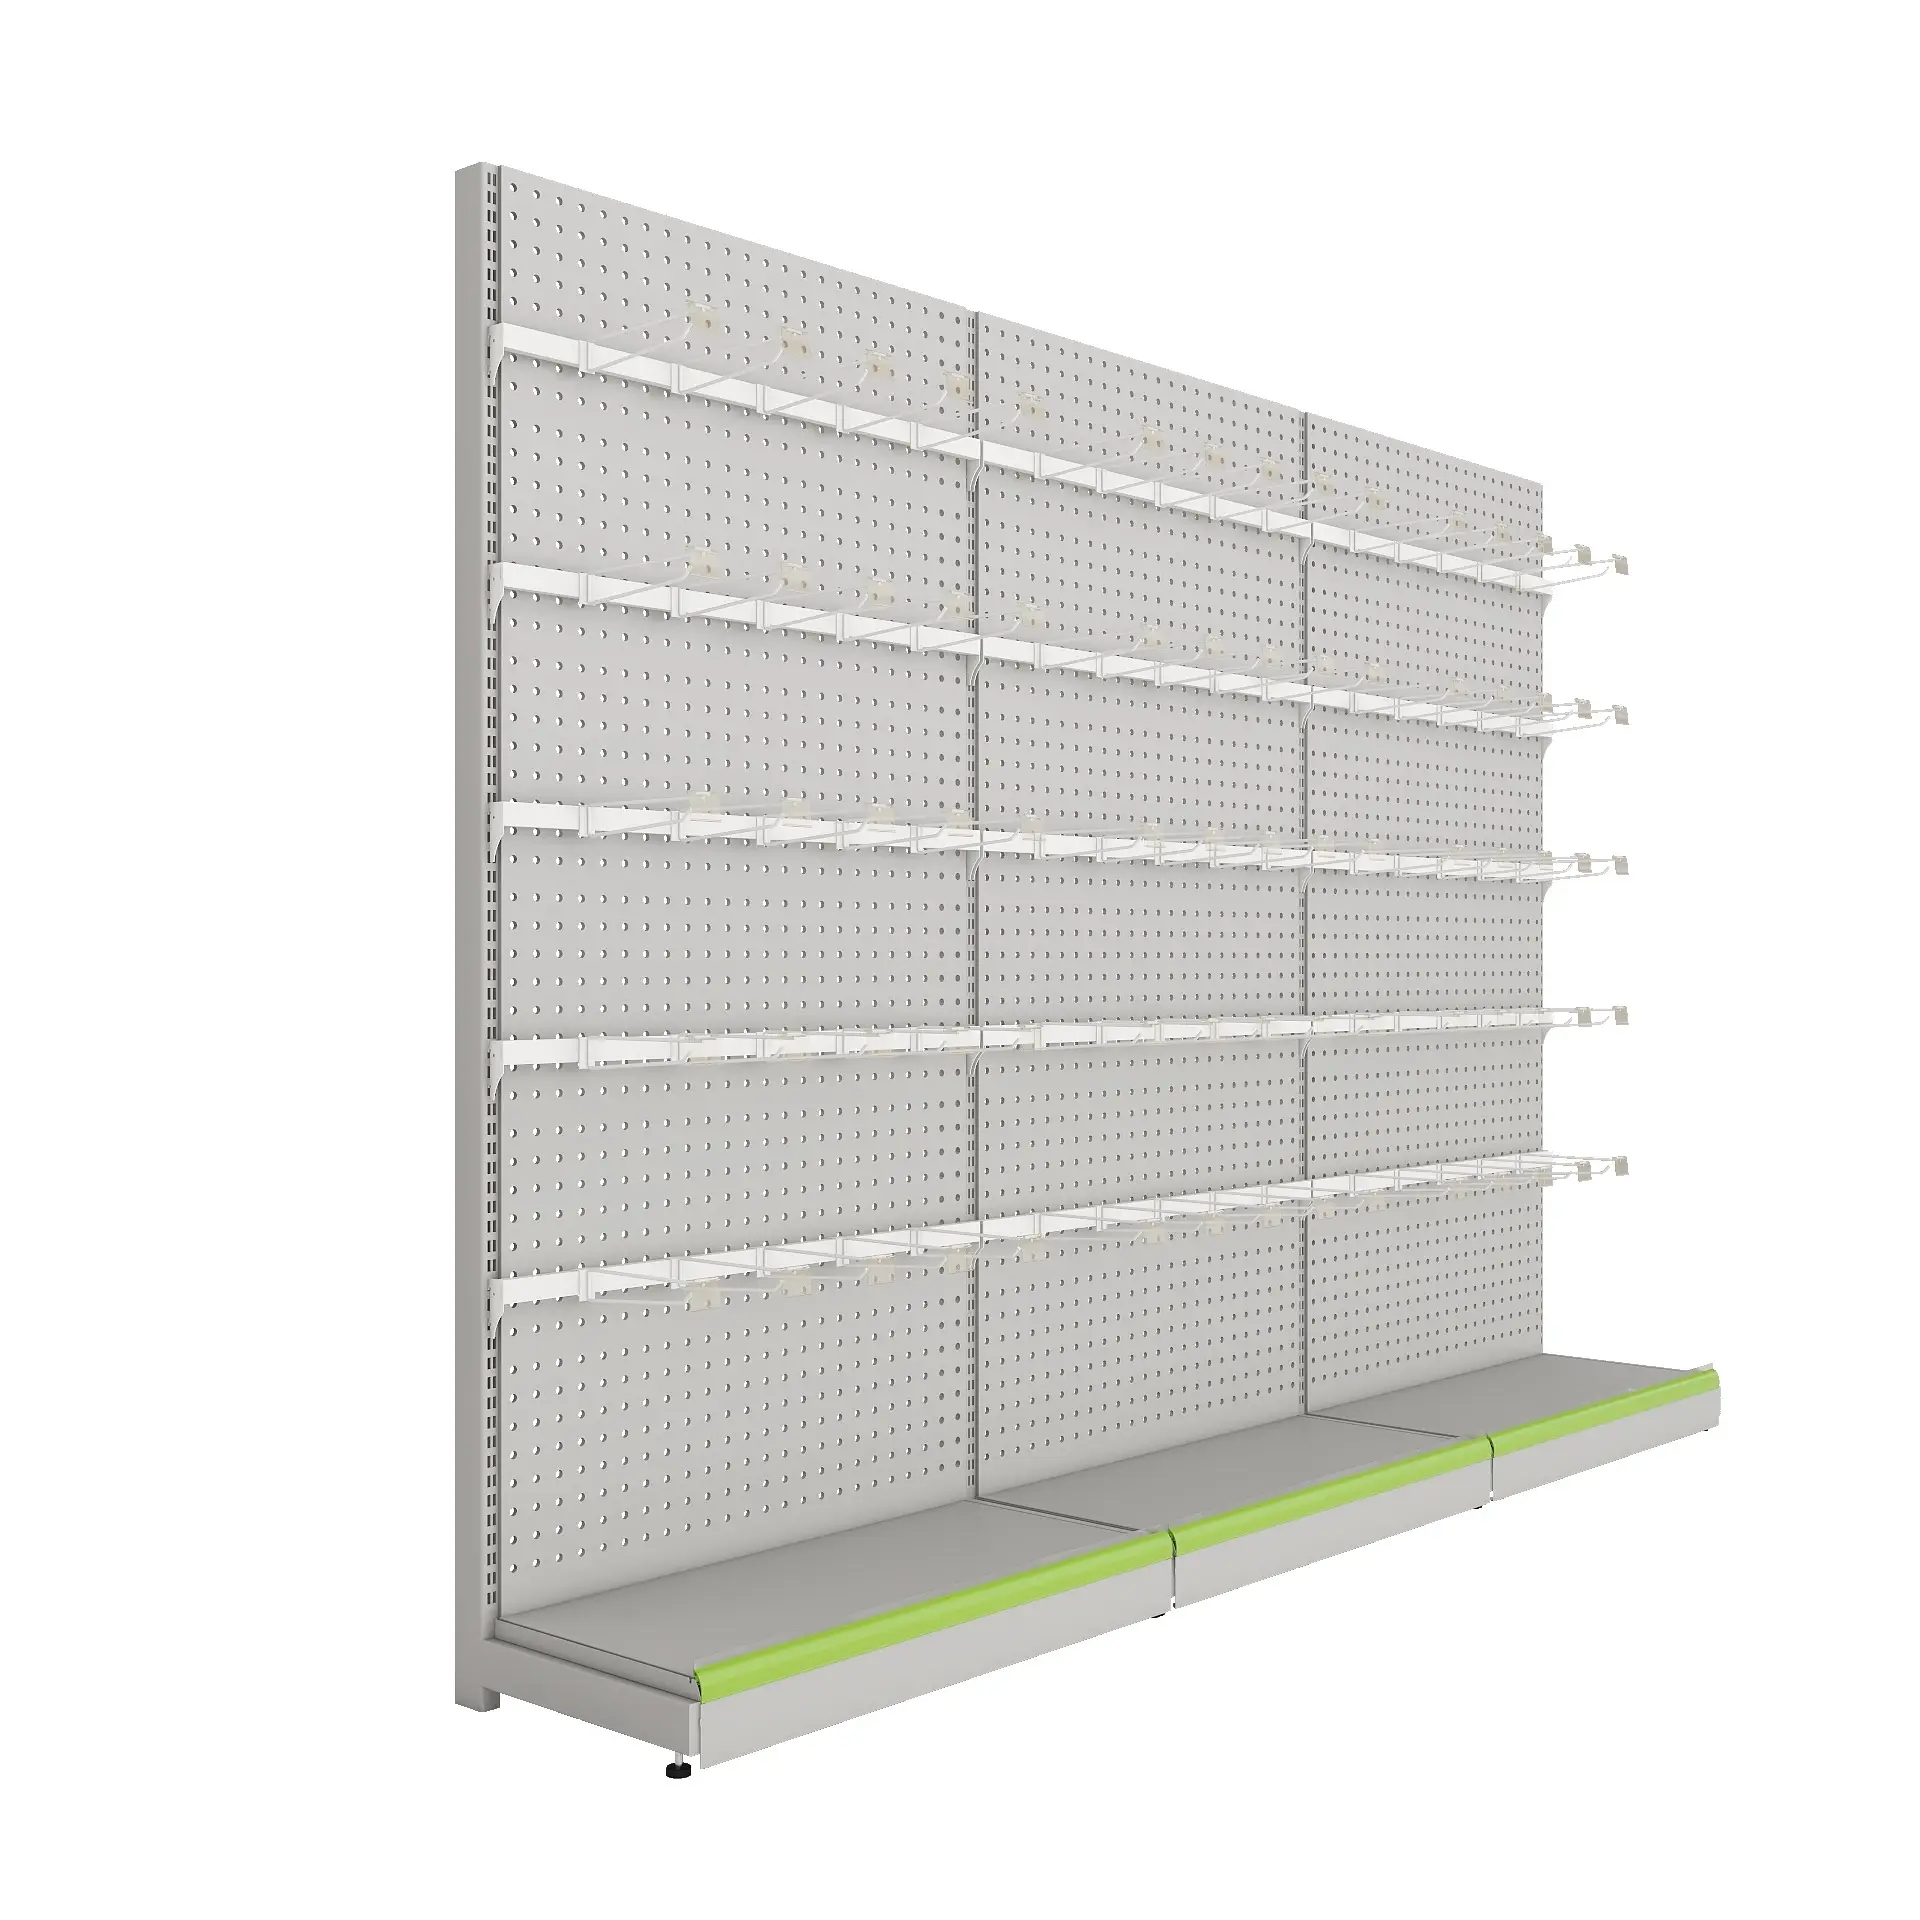 Adjustable Boltless Supermarket For Sale shelves store warehouse equipment vna pallet rack